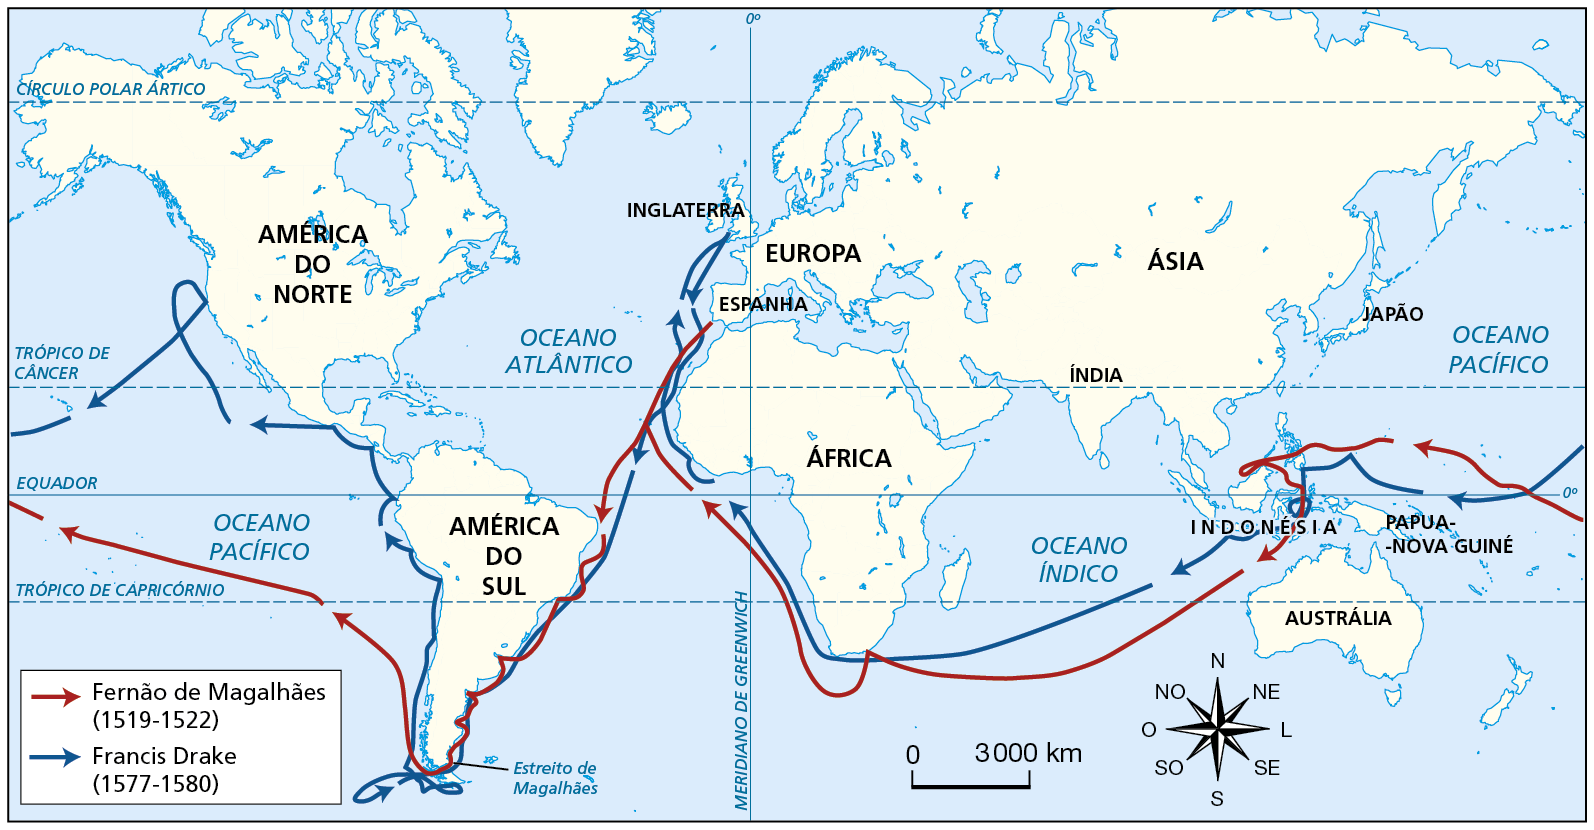 Mapa. Viagens de circum-navegação. Planisfério. Setas de cor vermelha e de cor azul indicam rotas de navegação. Na legenda, a seta vermelha indica: 'Fernão de Magalhães (1519-1522)'. A seta azul indica, 'Francis Drake (1577-1580)'. Destacada por setas vermelhas, a viagem realizada por Fernão de Magalhães entre 1519 e 1522, iniciou-se no sul da Espanha, tomou a direção sudoeste no Oceano Atlântico, atravessando a Linha do Equador e alcançando a costa leste da América do Sul, na altura da região que hoje corresponde ao estado brasileiro de Pernambuco. Contornou a costa da América do Sul, aportando na região da foz do Rio da Prata e seguiu, no rumo sul, aportando na região da Patagônia Argentina. Seguiu o rumo oeste, atravessando o Estreito de Magalhães, no sul da América do Sul, e atingiu o Oceano Pacífico, atravessou a Linha do Equador no Pacífico, navegando ao norte de Papua-Nova Guiné até atingir a região que hoje corresponde às Filipinas, chegando ao norte da Ilha de Bornéu, onde hoje se localiza parte da Malásia.  Rumou para o sul, no Mar de Banda, atravessando a região que hoje compreende a Indonésia, atingindo o Oceano Índico, e navegou na direção sudoeste, passando ao sul da Ilha de Madagascar, aportou na costa leste do sul da África, retornou para o mar, circundou o Cabo da Boa Esperança, contornando-o até atingir o Oceano Atlântico. Navegou no rumo noroeste, atravessou o Meridiano de Greenwich, contornando o oeste africano e terminou sua viagem de circum-navegação retomando a rota na costa noroeste da África até atingir a costa sul espanhola. Destacada por setas azuis, a viagem de Francis Drake, realizada entre 1577 e 1580, partiu do sul da Ilha da Grã-Bretanha, navegando pelo oceano Atlântico no rumo sul, contornou a Península Ibérica,  e navegou pela costa noroeste da África até o sul da região de Cabo Verde, atravessando o Atlântico, atravessando a Linha do Equador e alcançando a costa leste da América do Sul, pela qual navegou até atingir o Estreito de Magalhães. Navegou para oeste e atravessou o Estreito de Magalhães. Retornou para o leste e navegou ao sul da Terra do Fogo. Retomou o rumo oeste e alcançou a costa oeste da América do Sul, na região banhada pelo Pacífico, que hoje corresponde ao litoral do Chile. Contornou o oeste da América do Sul, tomando o rumo norte e navegando pela costa americana do Pacífico, aportou na região que hoje corresponde ao Chile e seguiu no rumo noroeste aportando no território que hoje corresponde ao Peru; seguindo pelo noroeste aportou também na região que hoje corresponde ao Equador. De lá partiu até atingir a América Central, onde aportou na região que hoje pertence à Nicarágua e no território que hoje compreende o extremo sul do México. Em seguida, navegou no rumo leste e depois no rumo norte, até a costa oeste da América do Norte, onde aportou na região que hoje corresponde à cidade de San Francisco. De lá, tomou a direção sudoeste, atravessou a Linha do Equador no Pacífico, e navegou ao norte de Papua-Nova Guiné. Aportou em ilhas do Pacífico e na região que hoje corresponde às Filipinas e tomou a direção sul na região das Ilhas Molucas.  No Mar de Banda, navegou em torno de ilhas que hoje compreendem a Indonésia. Tomou o rumo oeste, atravessou as Pequenas Ilhas Sonda e atingiu o Oceano Índico. Navegou no rumo sudoeste, na direção do sul da África, passou ao sul da Ilha de Madagascar, passou ao sul da África, contornou o oeste da África, navegando no Oceano Atlântico no rumo noroeste e atravessou o Meridiano de Greenwich. Atravessou a região do Cabo Verde, no Atlântico, seguindo no rumo norte até a Ilha da Grã-Bretanha. No canto inferior direito, rosa dos ventos e escala de 0 a 3.000 quilômetros.